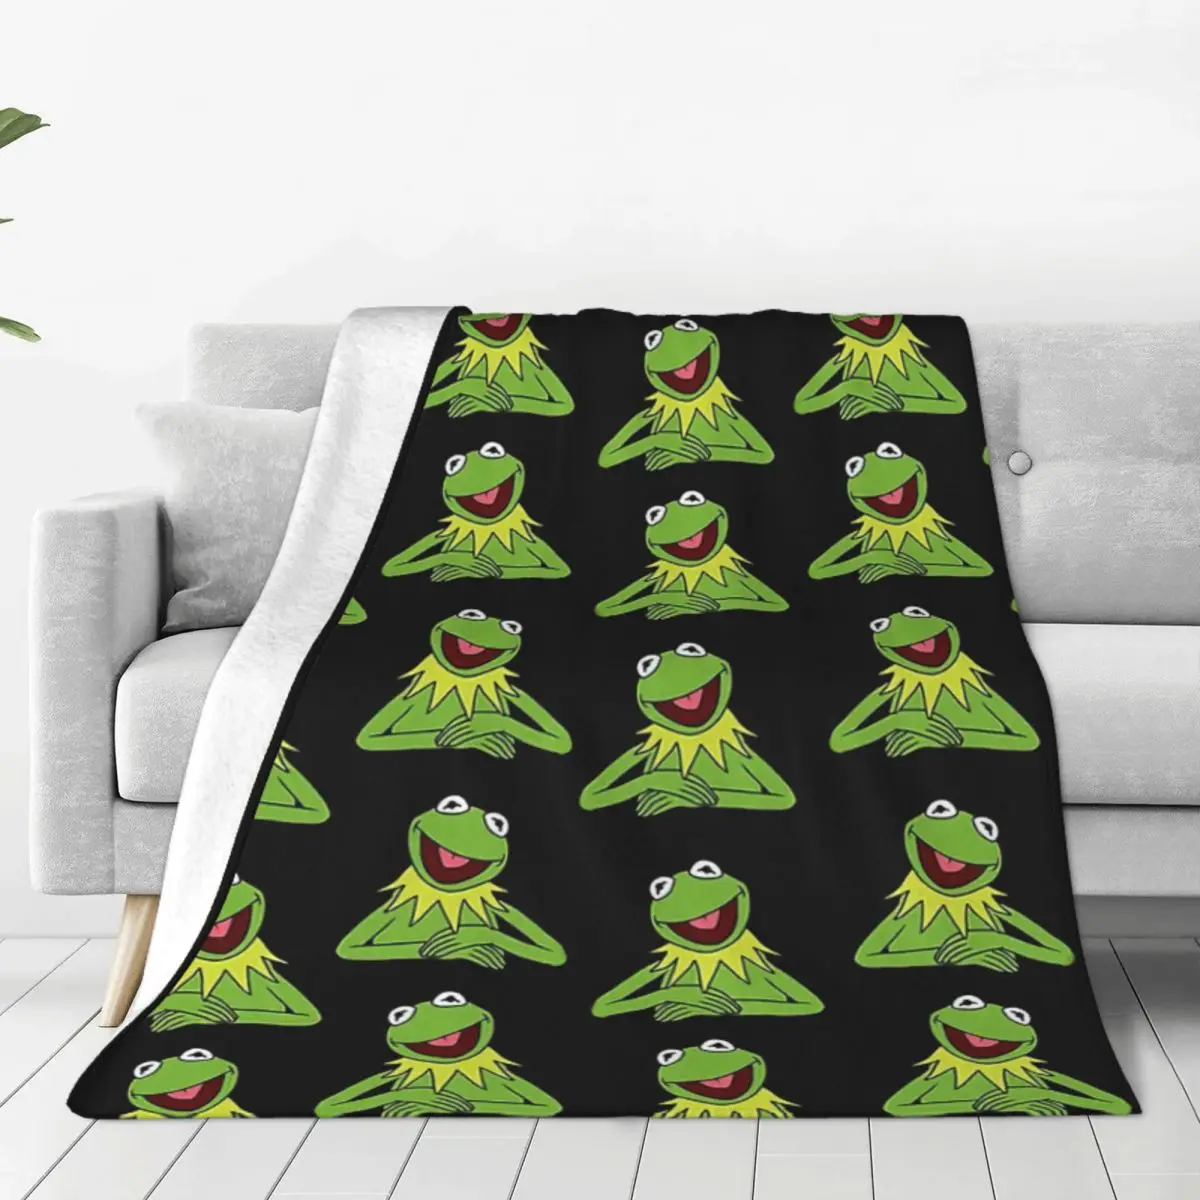 

Kermit The Frog Pattern Flannel Fleece Blanket For Kids Teens Adults Soft Cozy Warm Fuzzy